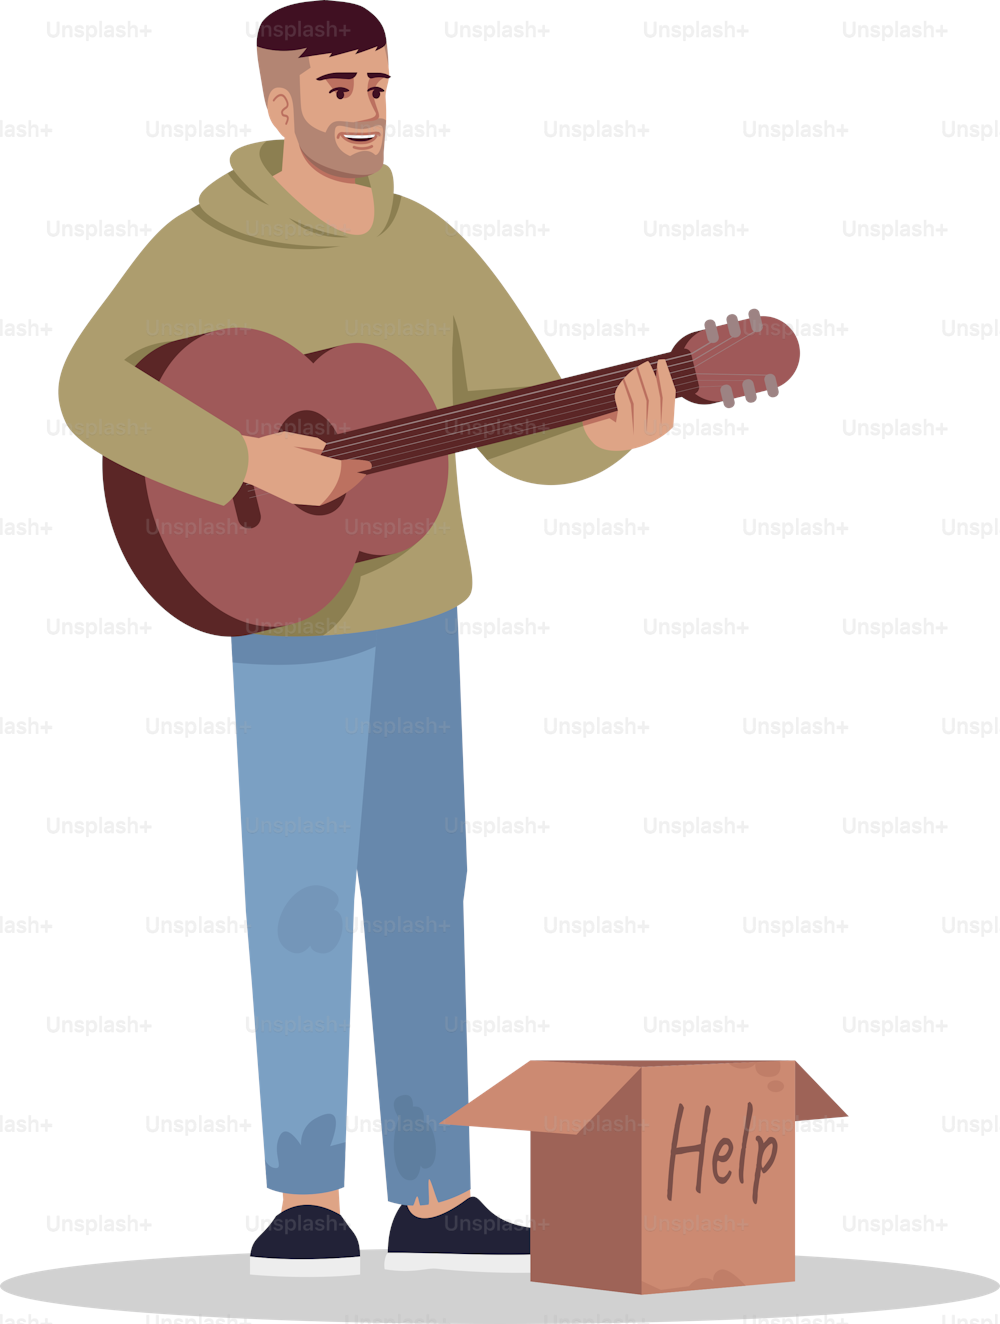 Músico sin hogar semi plano RGB ilustración vectorial en color. Guitarrista desempleado canta por dinero. Pobre cantante desempleado permorf por donaciones. Intérprete aislado personaje de dibujos animados sobre fondo blanco